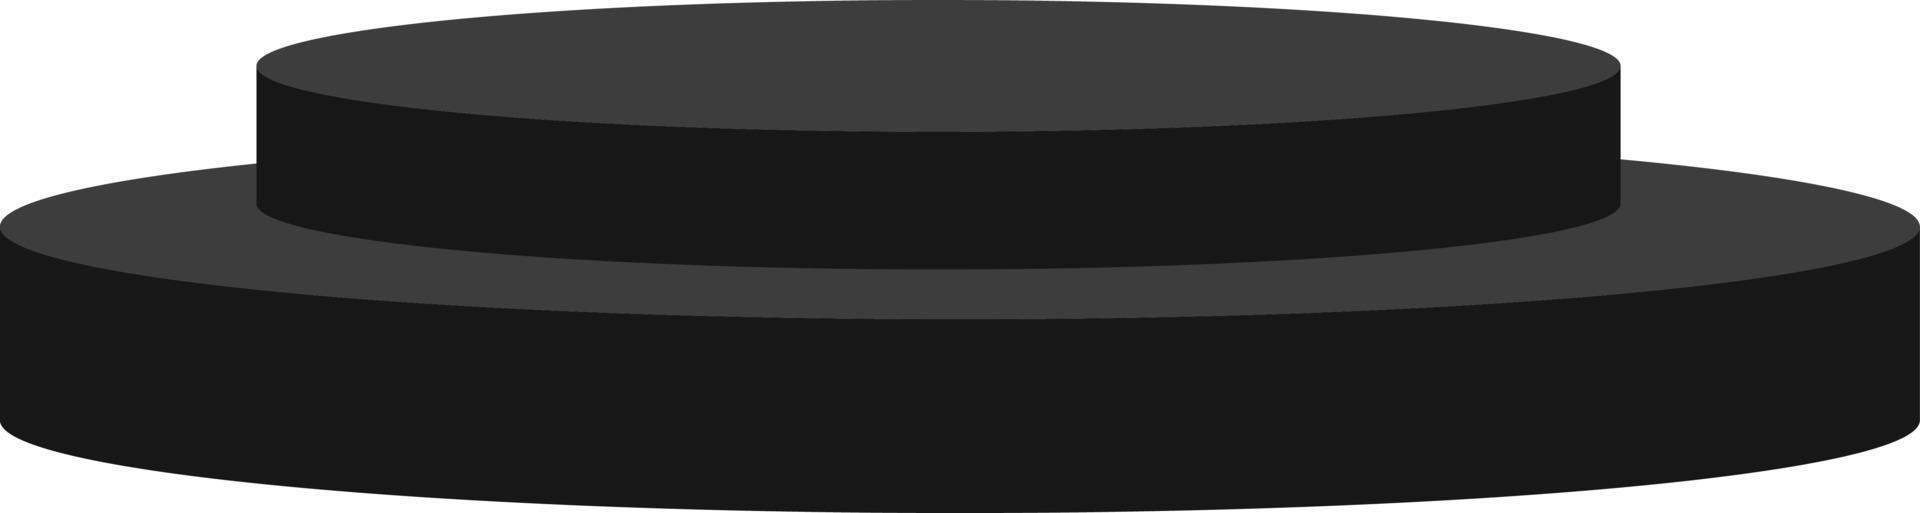 maquete de pódio 3d preto sobre fundo branco. palco de pódio de círculo de cilindro fino realista preto brilhante. pódio de vencedor realista. estilo plano. vetor